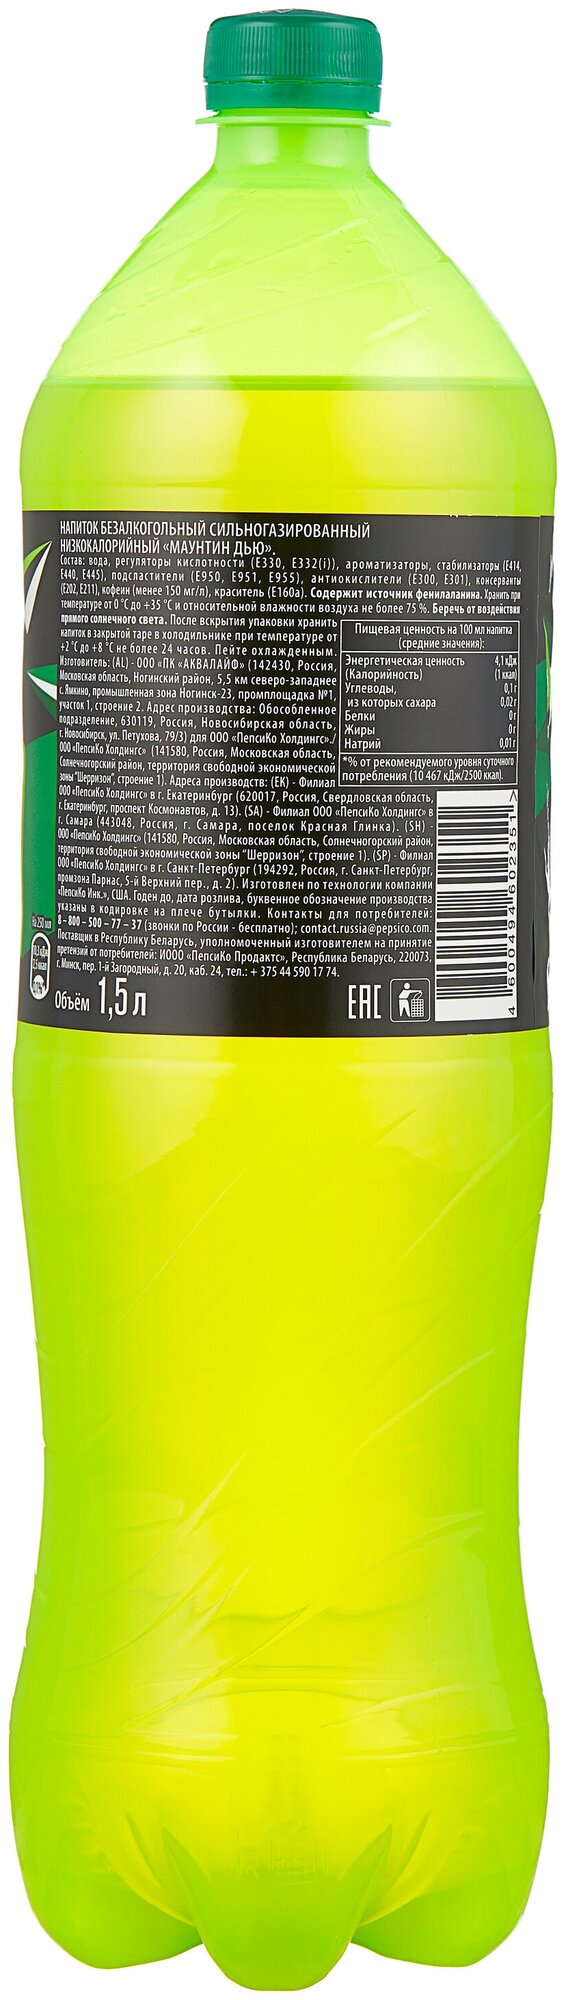 Газированный напиток Mountain Dew 1.5 л. (РФ) - 6 бутылок - фотография № 6